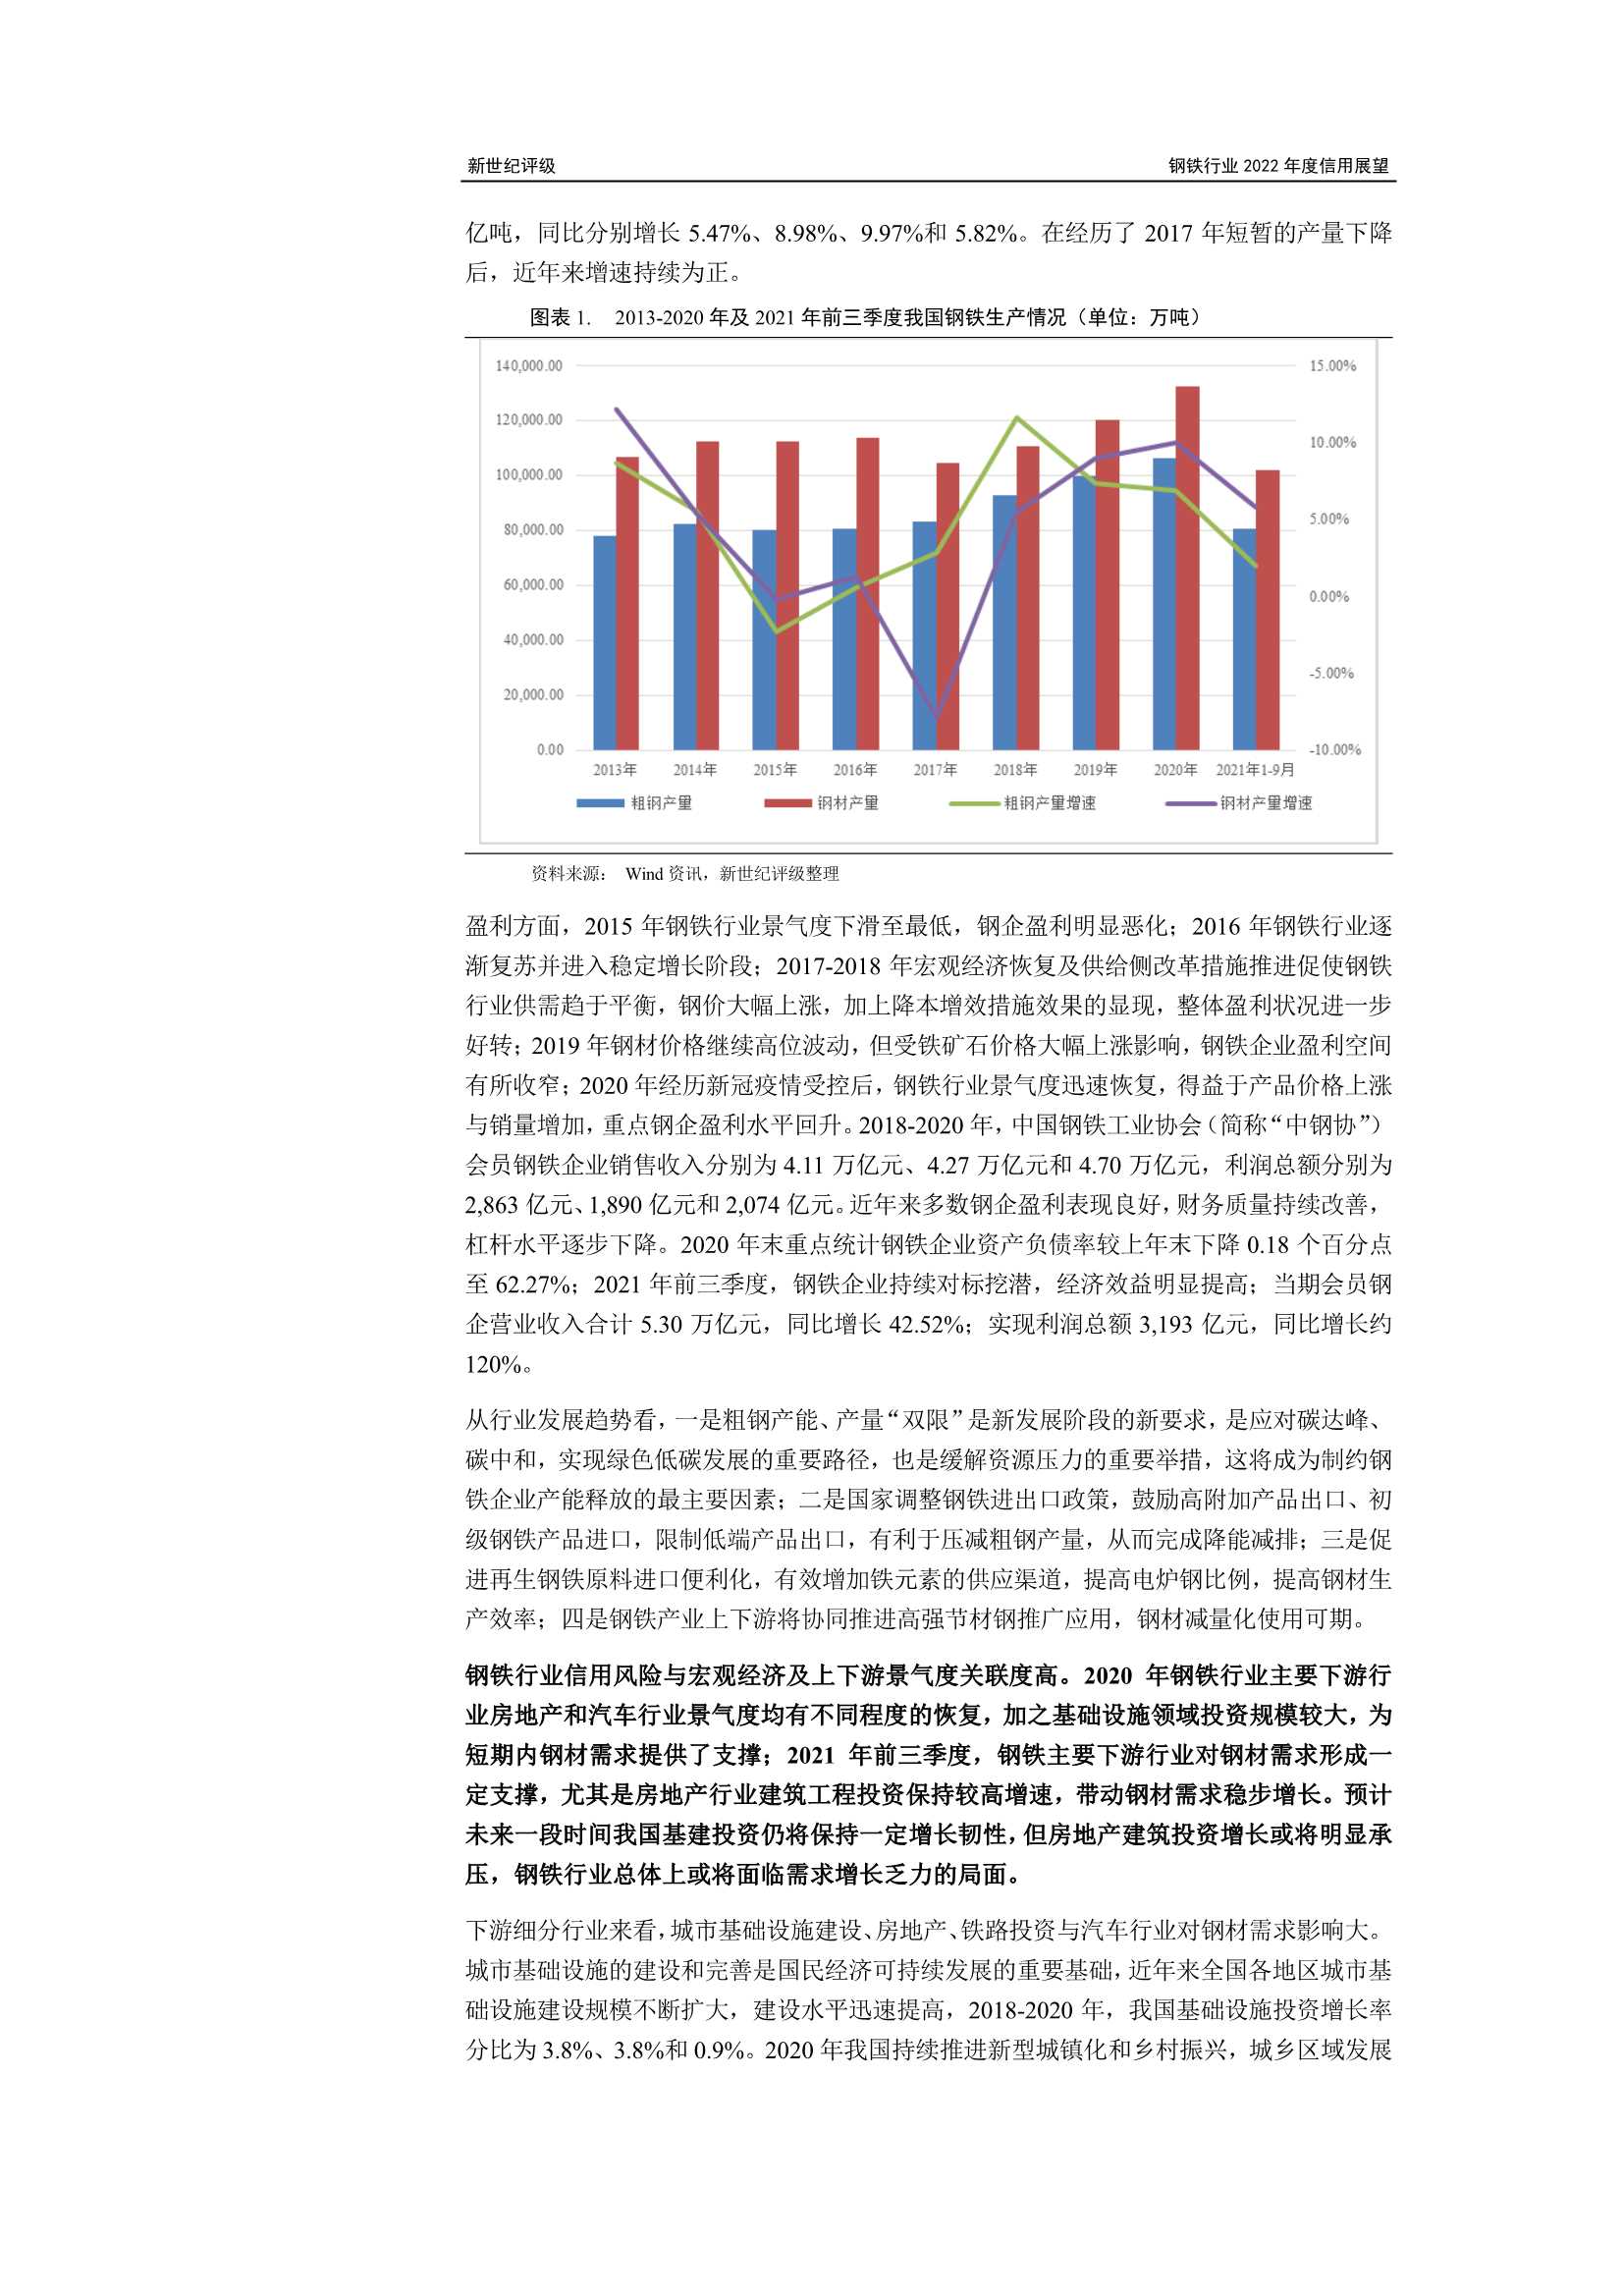 上海新世纪资信-钢铁行业2022年度信用展望-2022.02-24页